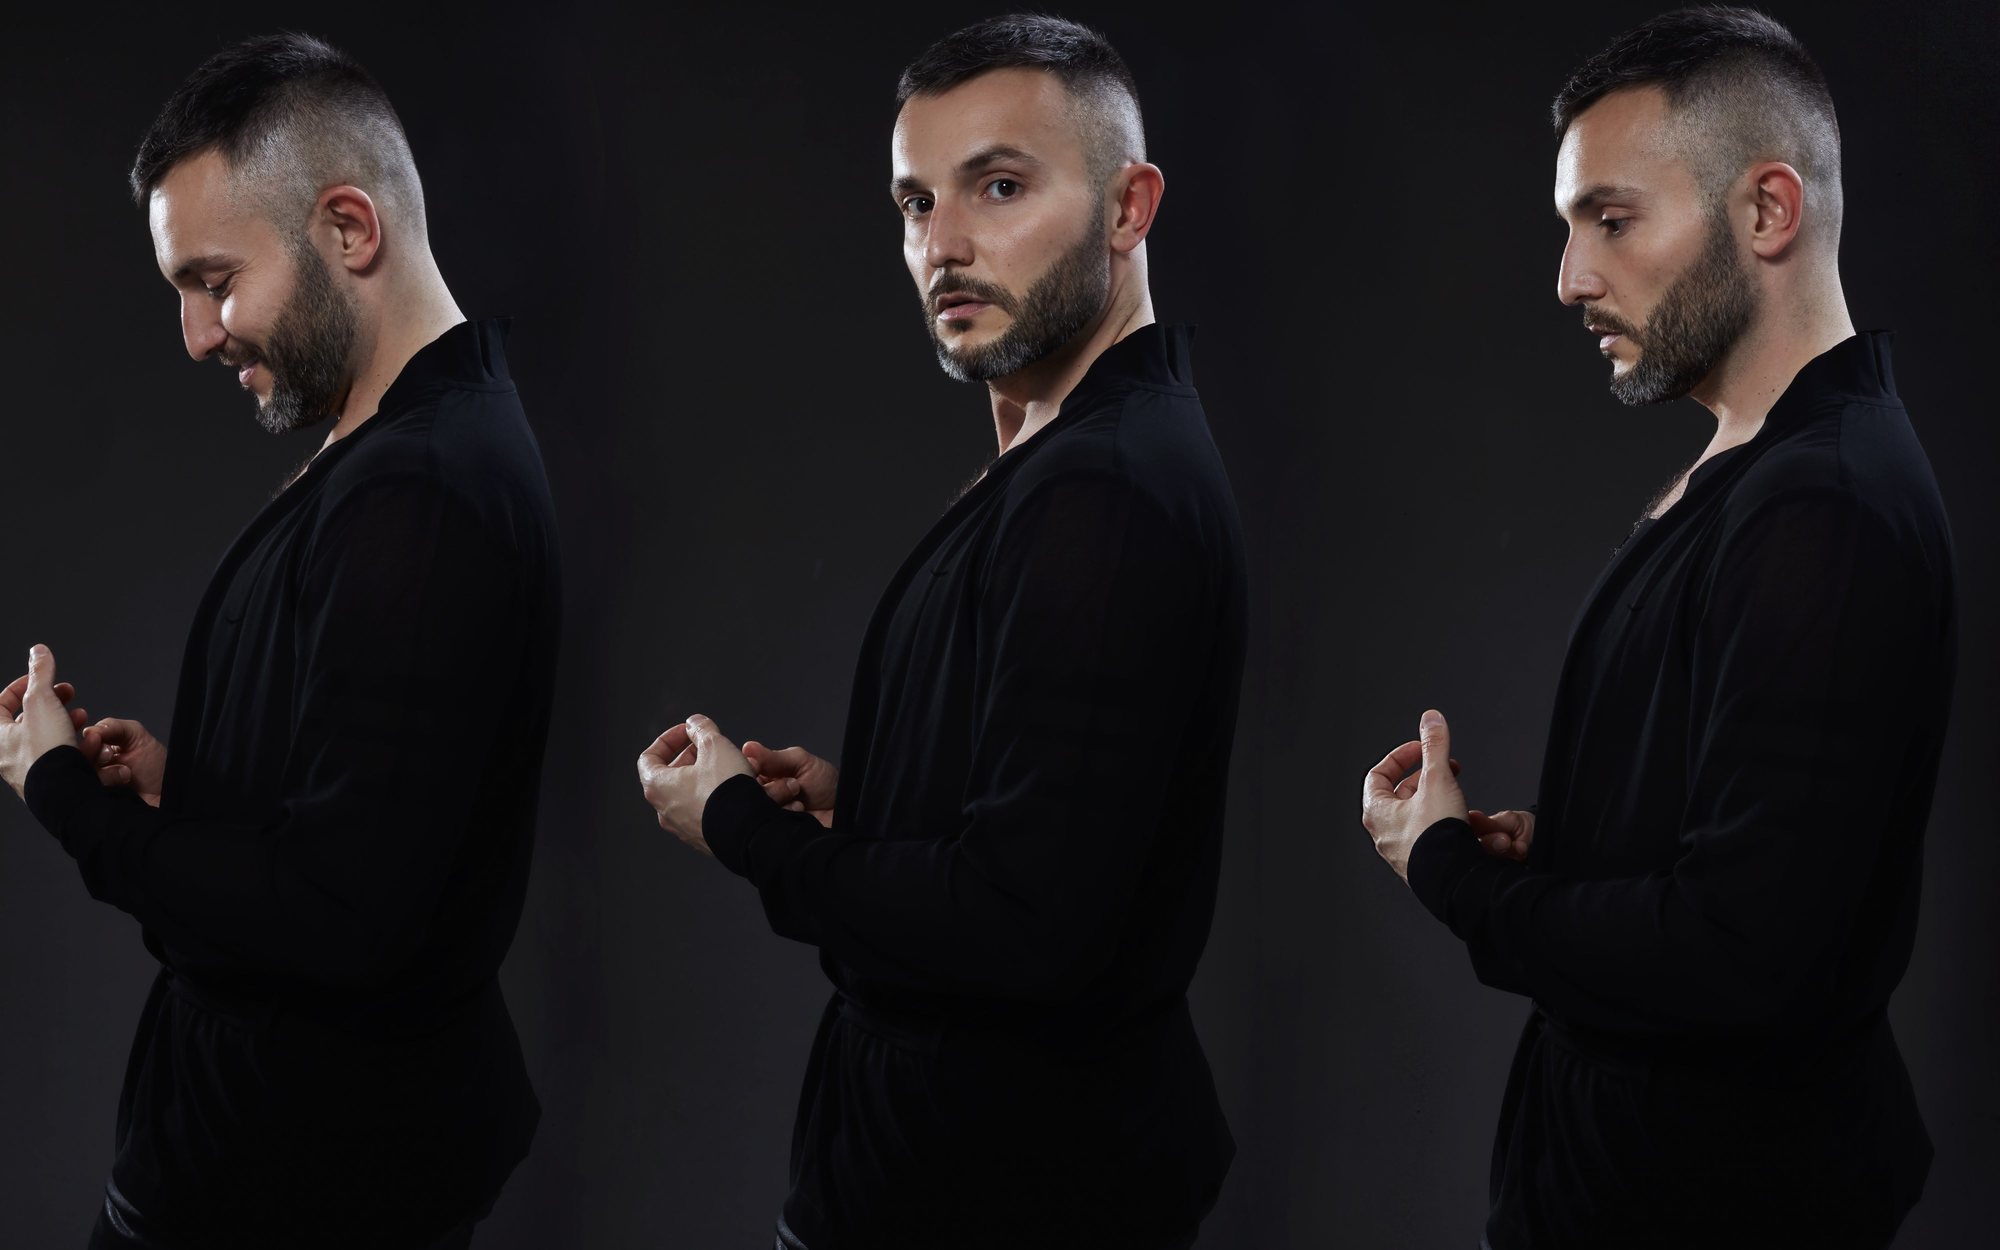 Vasil Garvanliev representará a Macedonia del Norte en Eurovisión 2021 con el tema "Here I Stand"